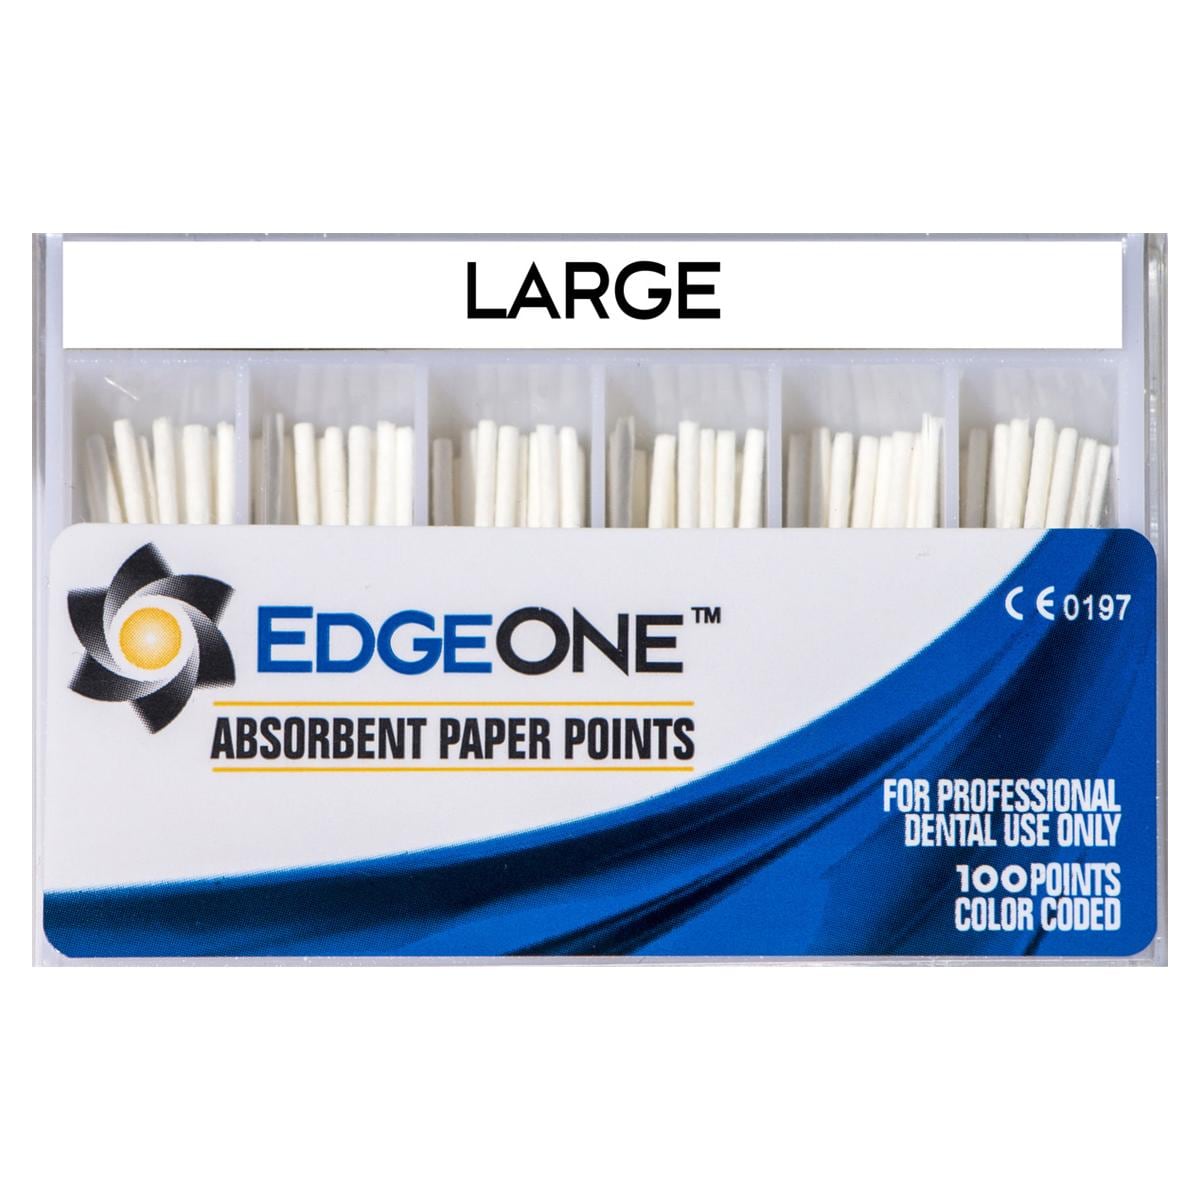 Pointes en papier absorbant EdgeOne - Large (blanc), 100 pcs